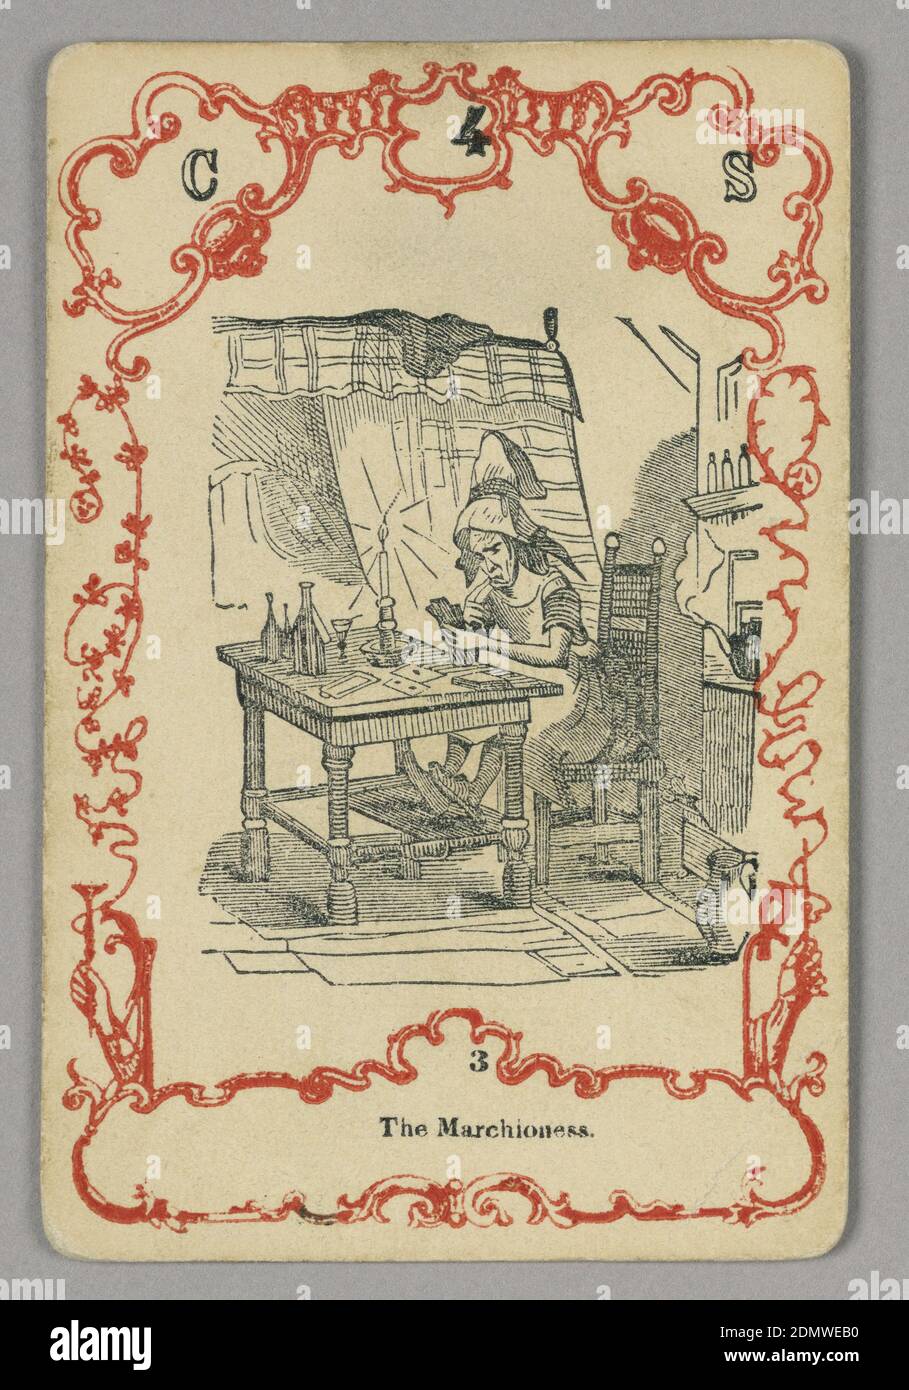 Spielkarte, rote und schwarze Tinte, Papier, oben: C 4 S; unten Mittelbild: 3, Europa, ca. 1855, Spielkarte Stockfoto